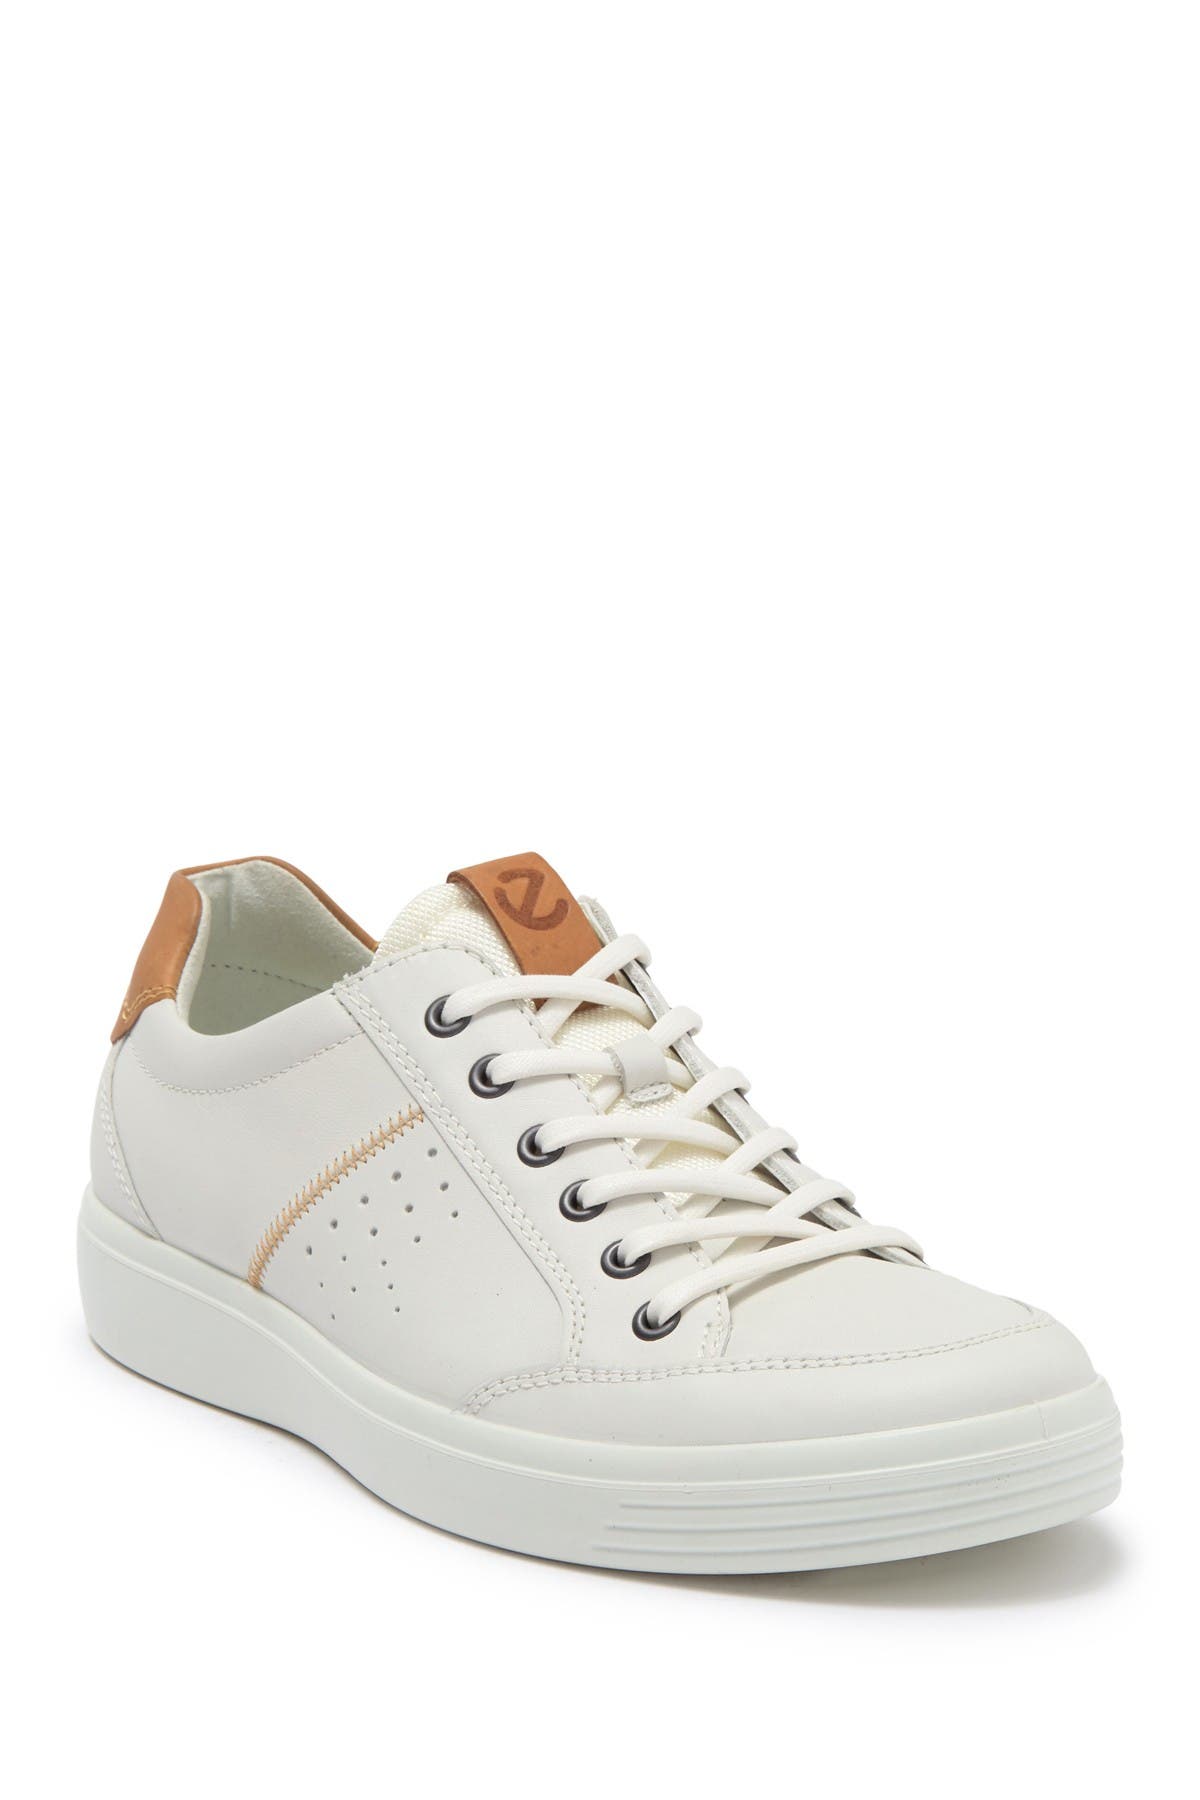 Ecco Soft Classic Sneaker In Open White88